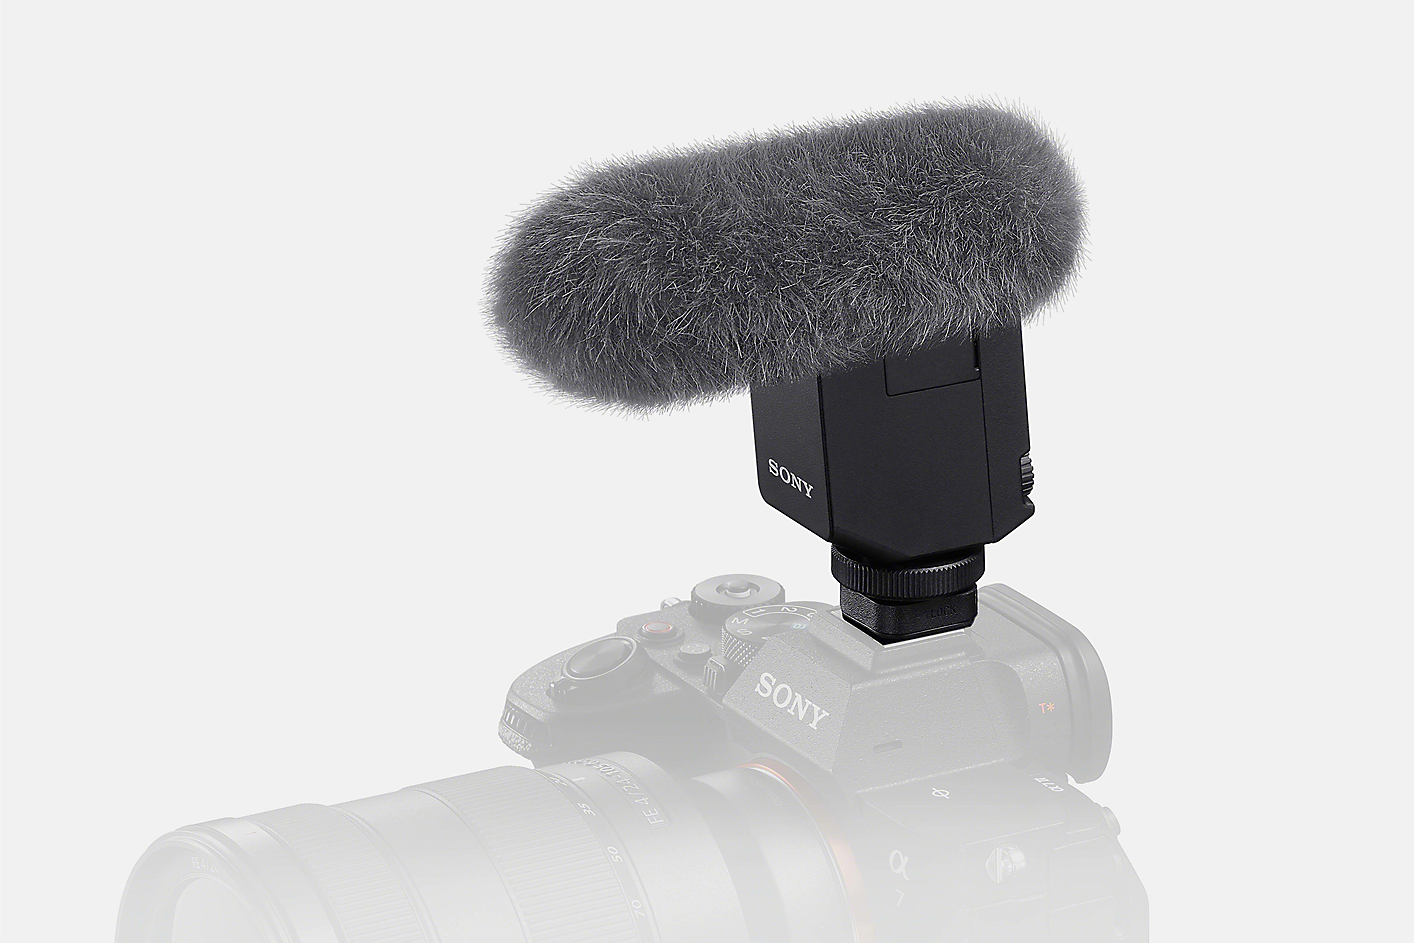 Produktový snímek mikrofonu ECM-B10 s kožešinovou ochranou proti větru